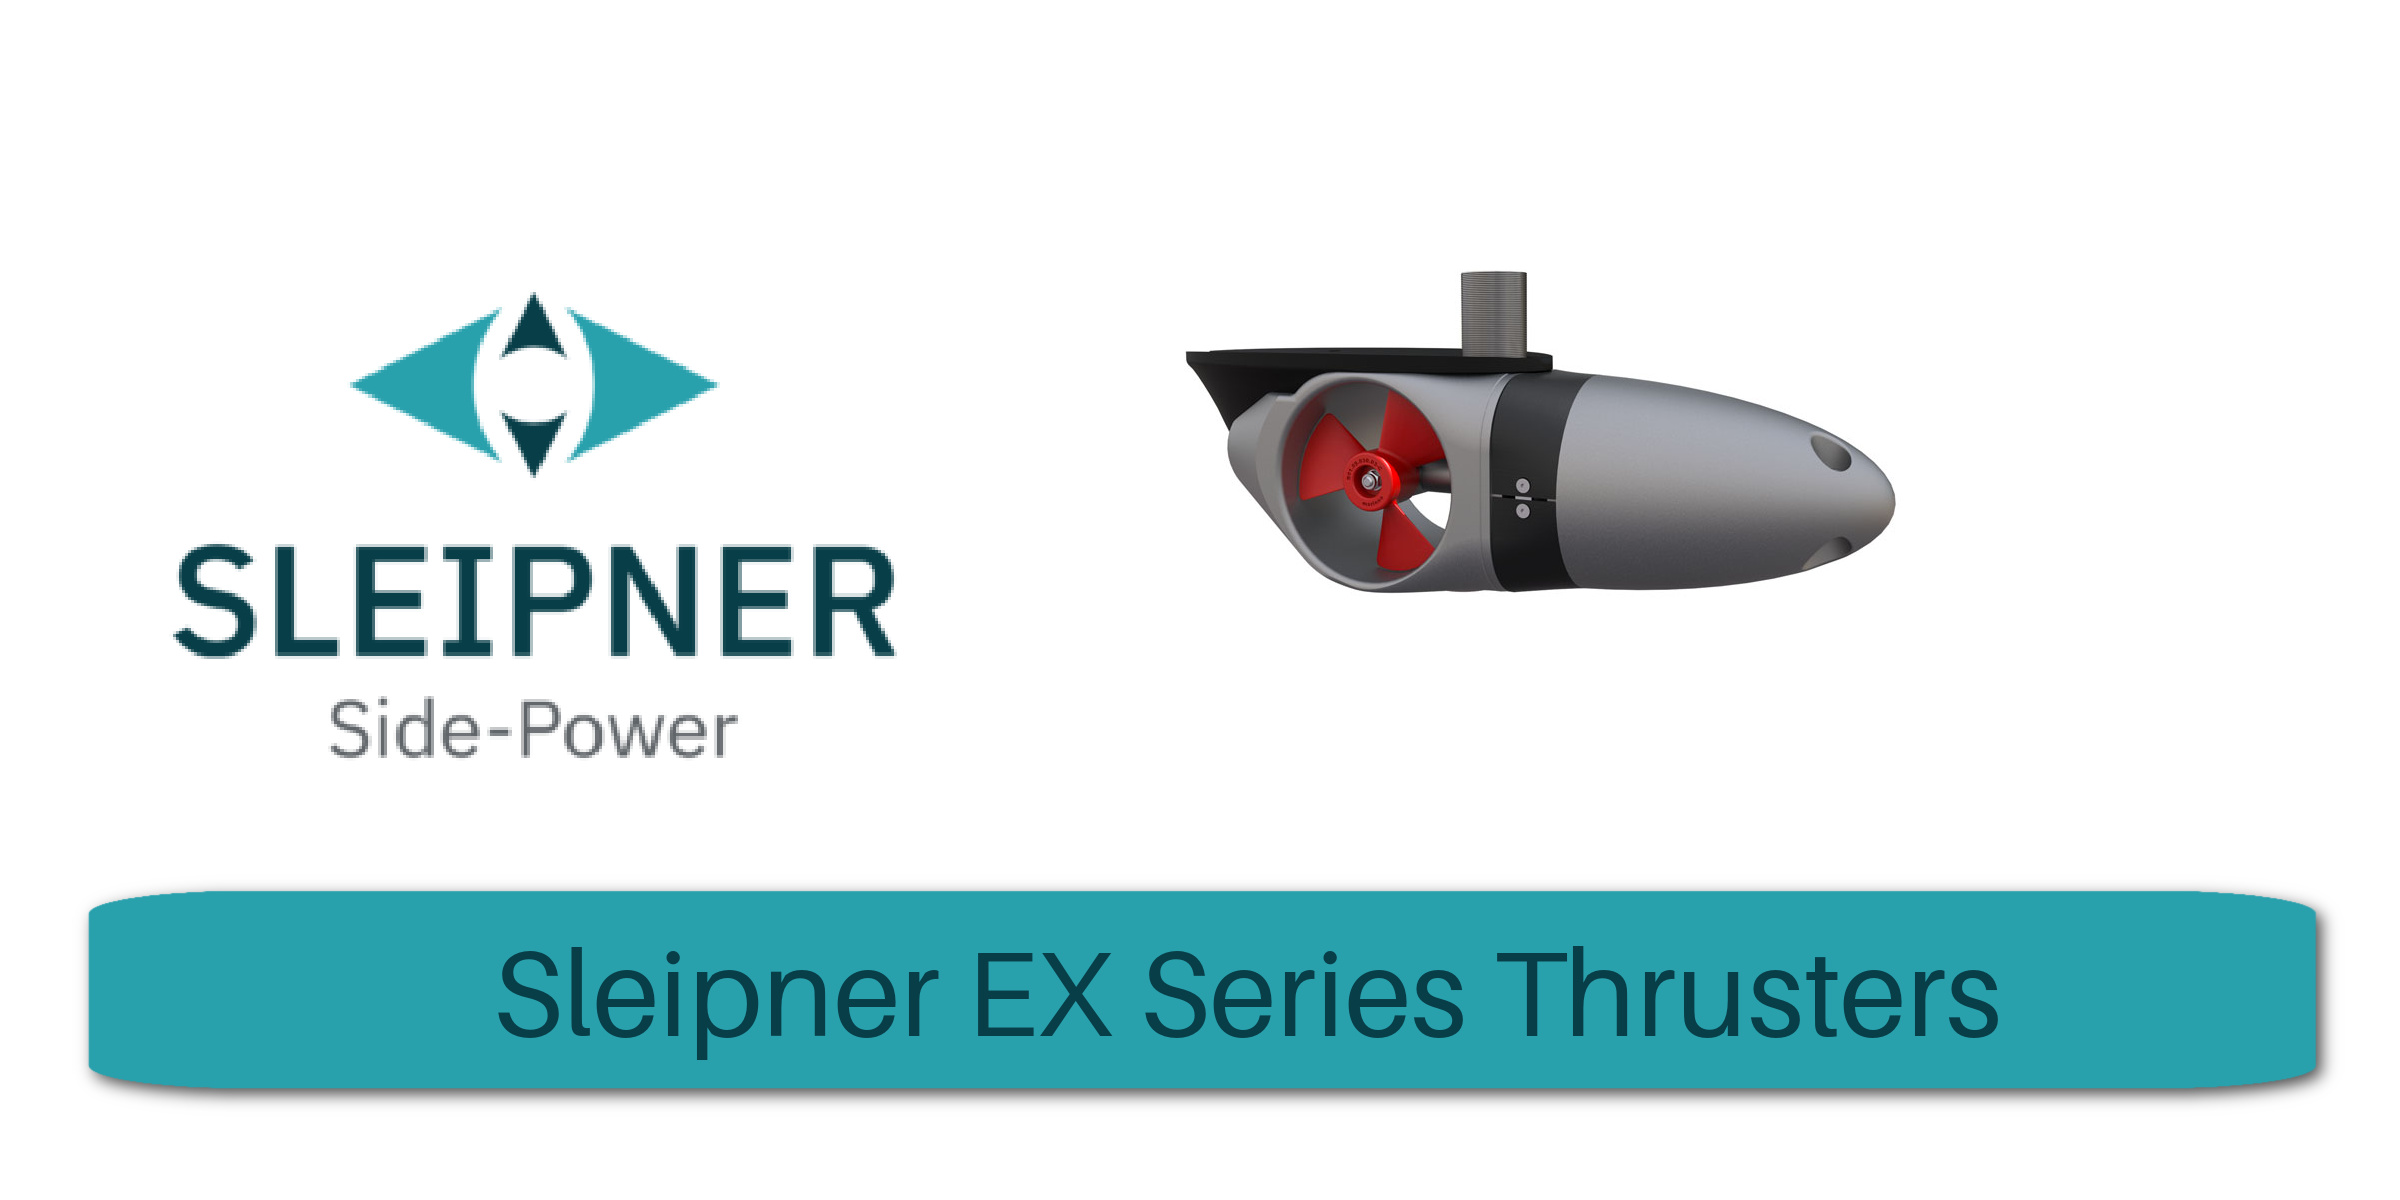 EX Series Thrusters